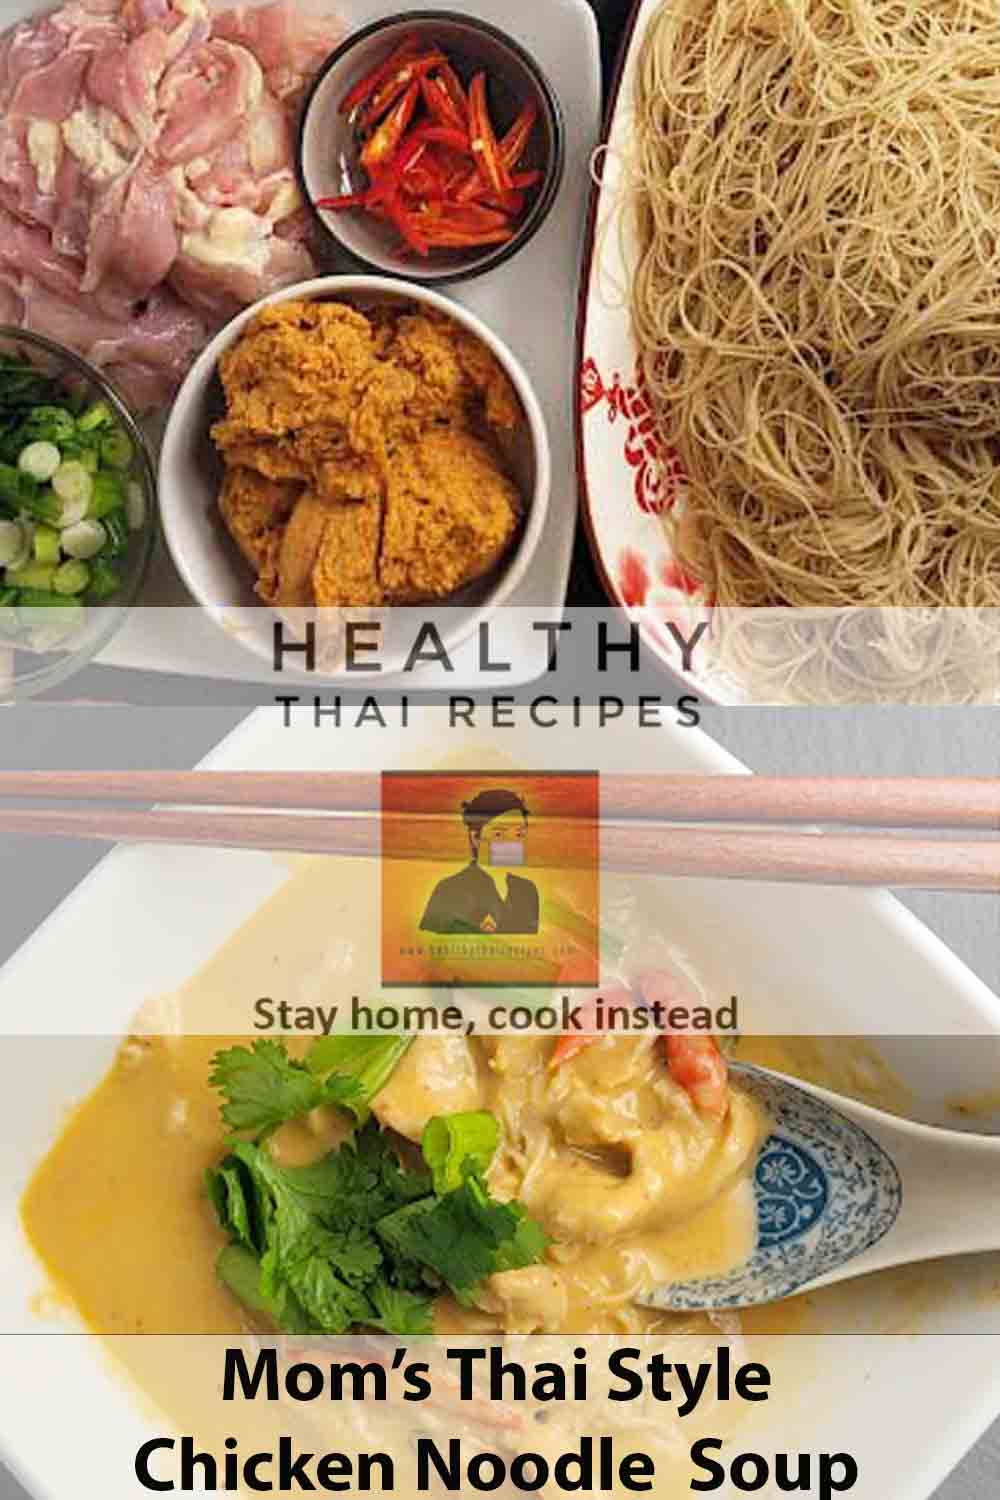 Receta de fideos y sopa de pollo tailandesa fácil de mamá Pinterest Image